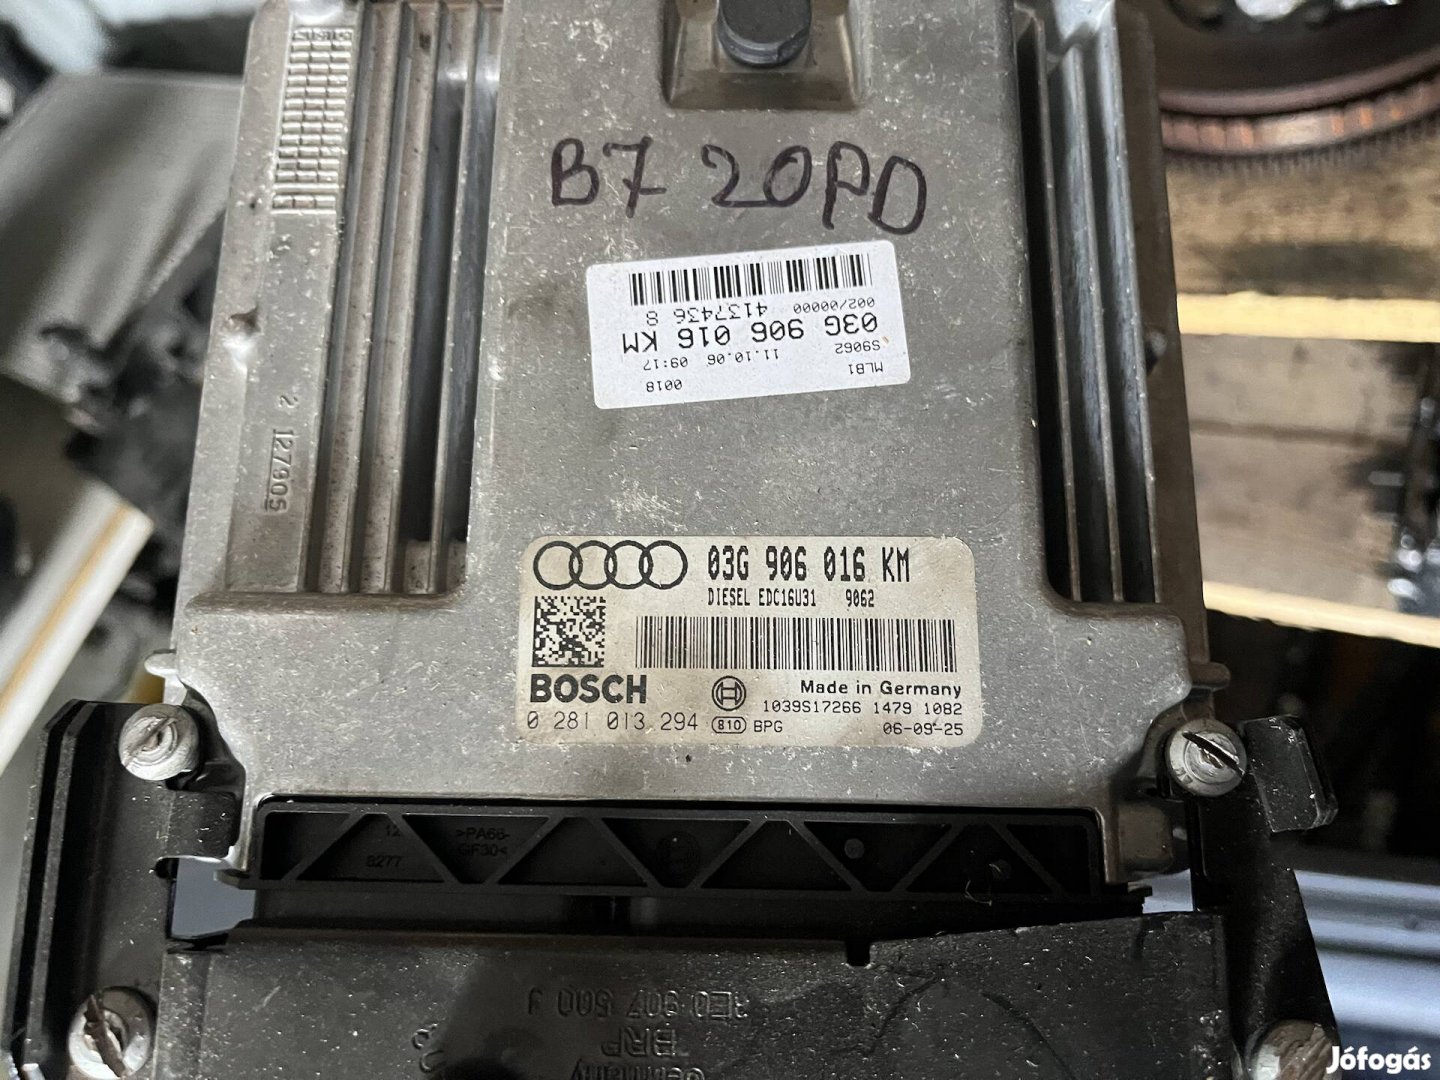 Audi motorvezérlő ( 03G 906 016 KM )